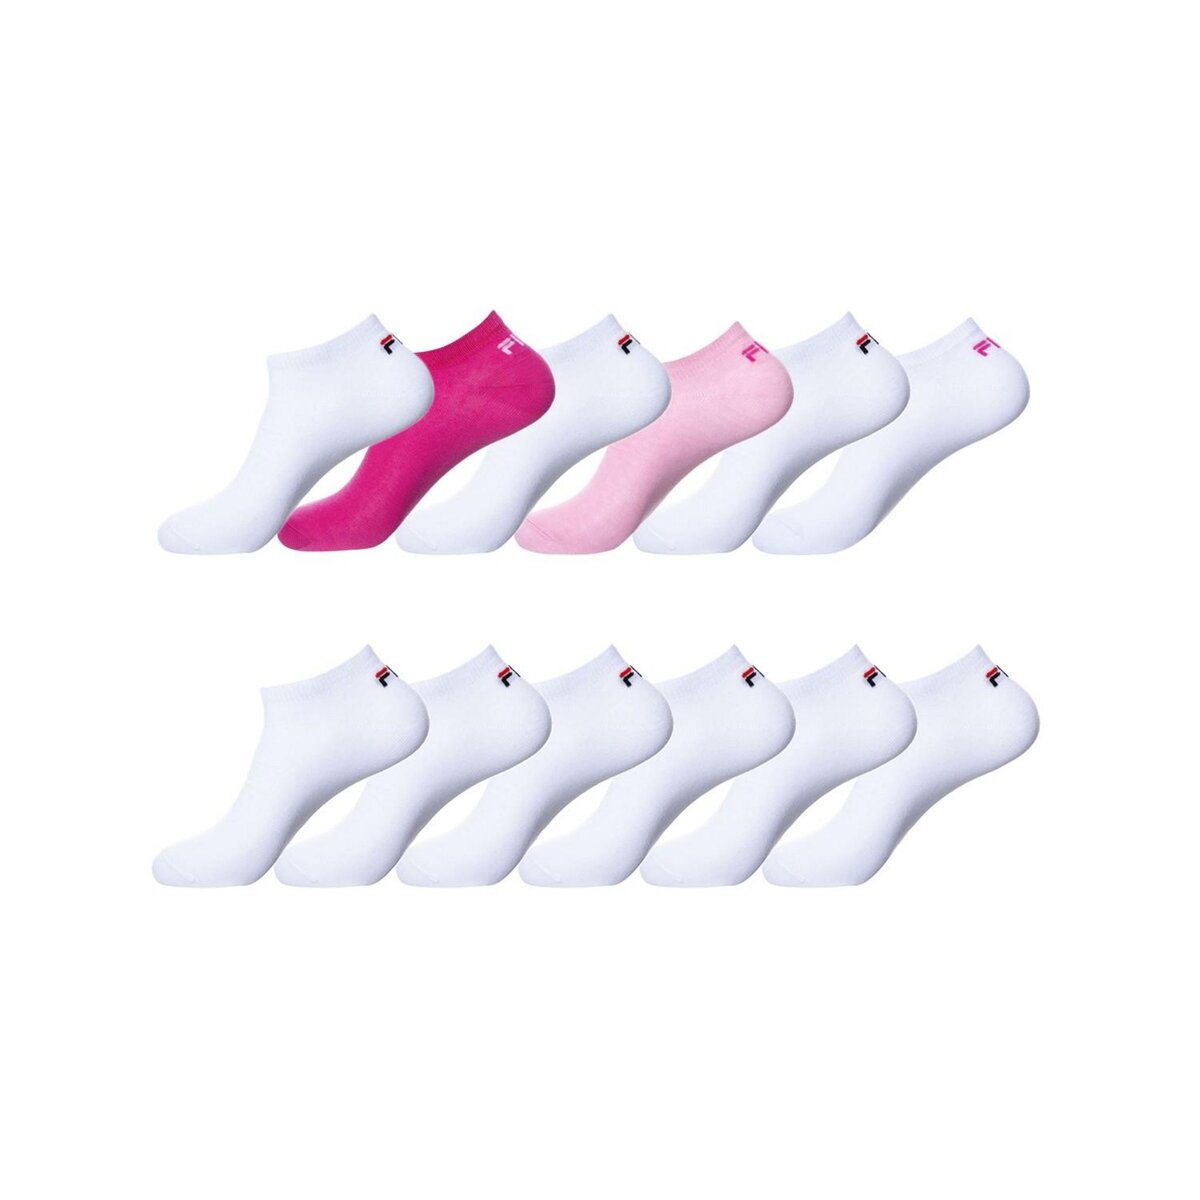 FILA Lot de 12 Paires de Chaussettes Socquettes femme